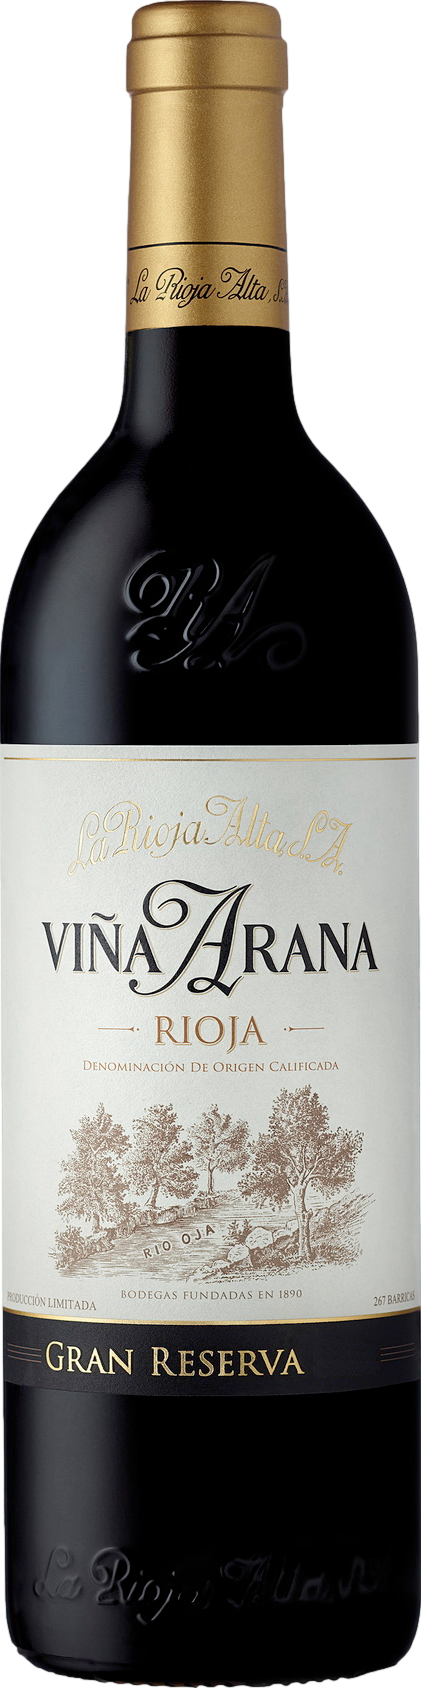 La Rioja Alta Gran Reserva Vina Arana 2015